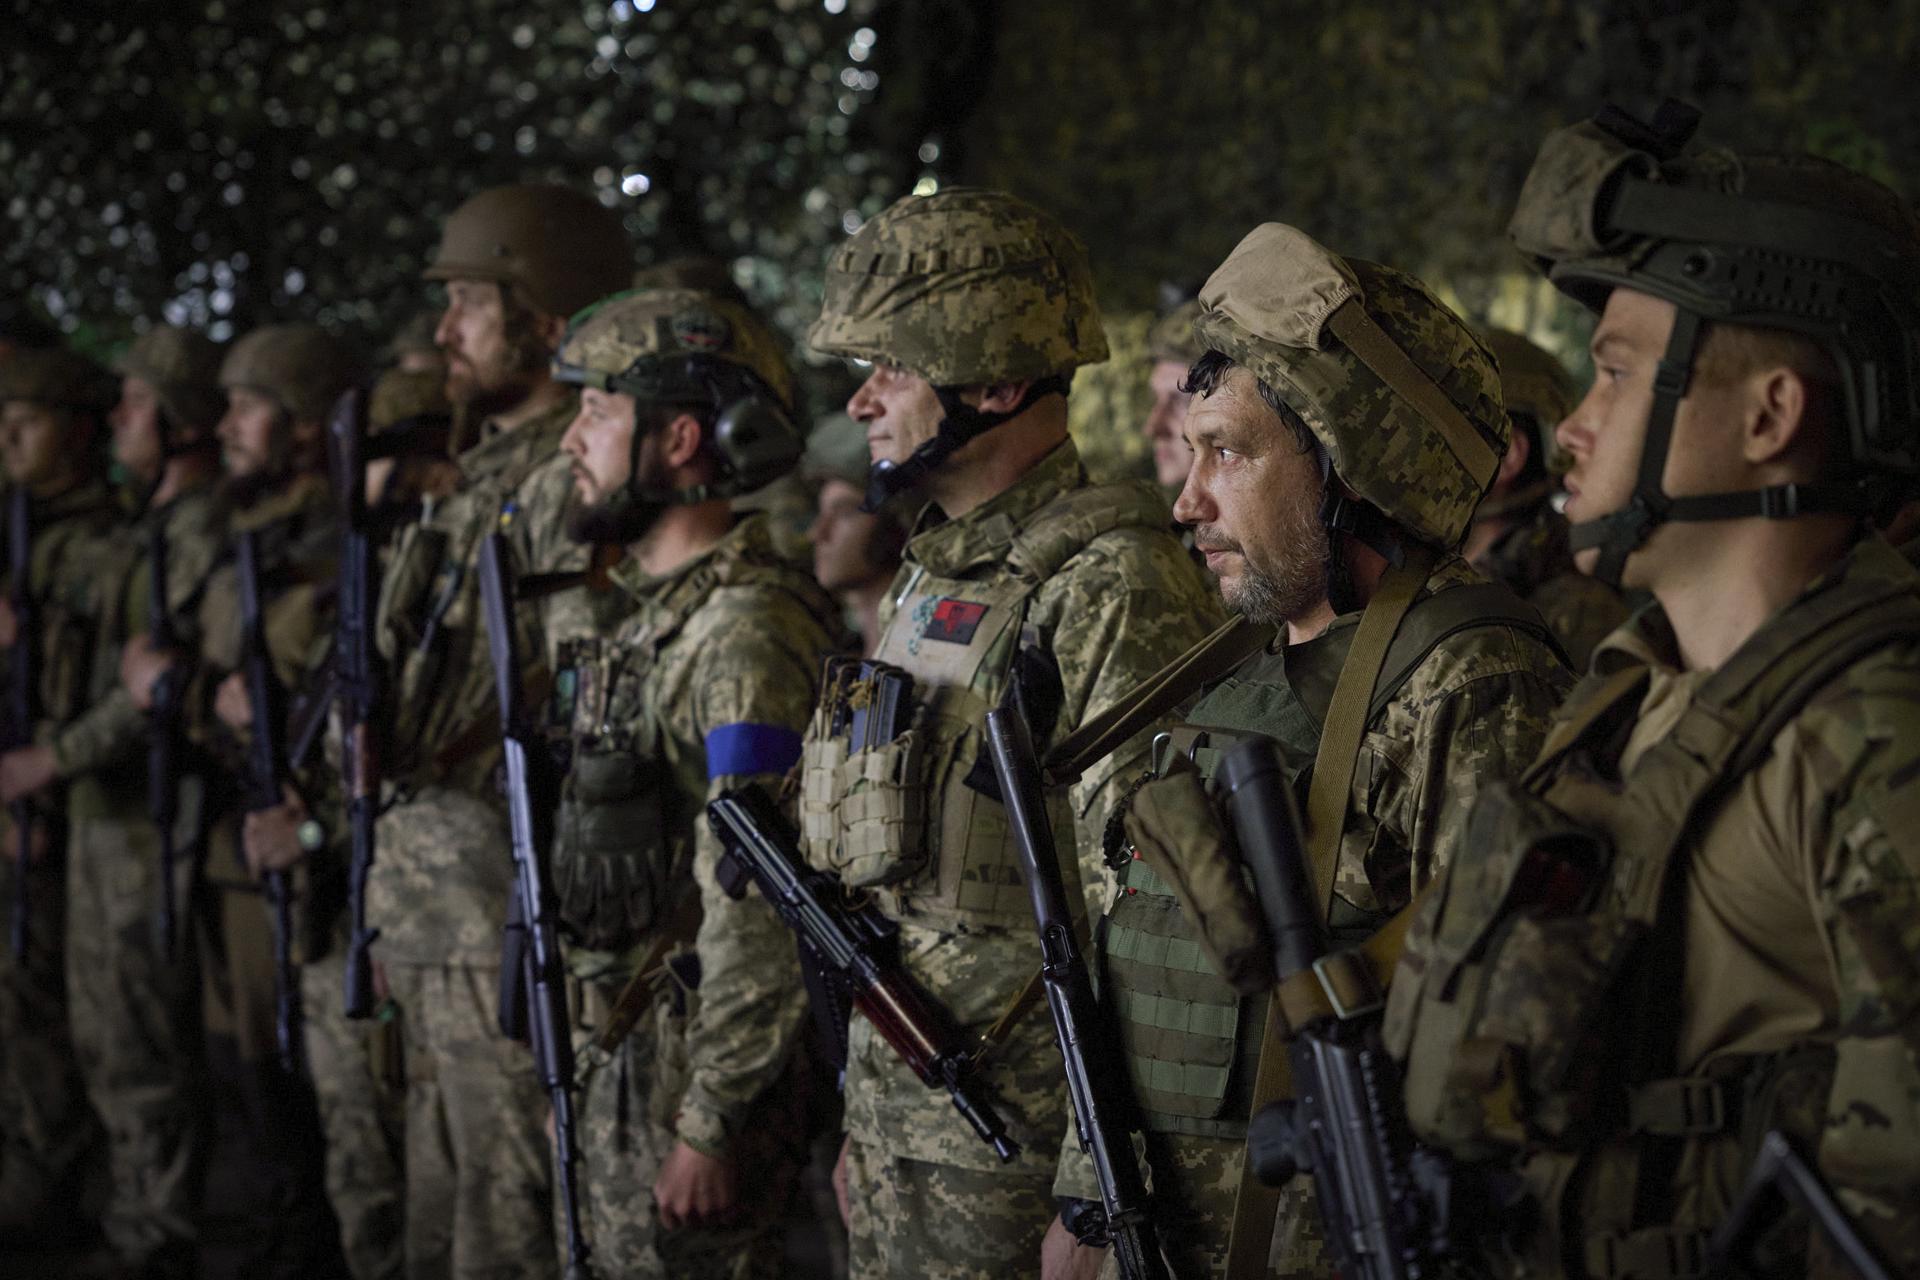 “He visto una cabeza cortada y otras atrocidades”: Los horrores de la guerra en Ucrania